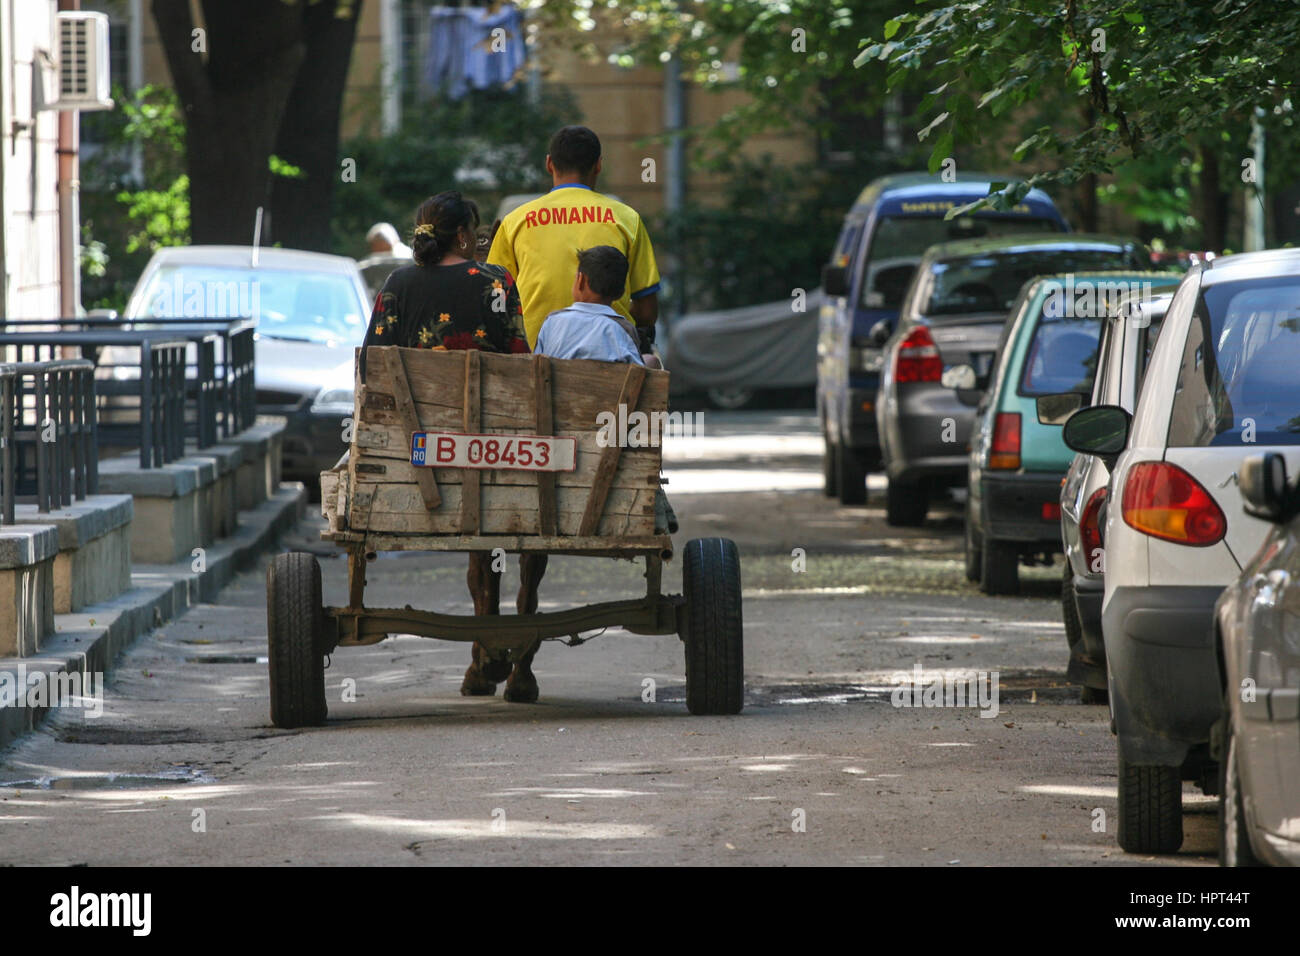 Bukarest, Rumänien, 14. Juli 2009: Ein Cart, angetrieben von einer Zigeunerfamilie ist siehe auf einer Straße in Bukarest. Stockfoto